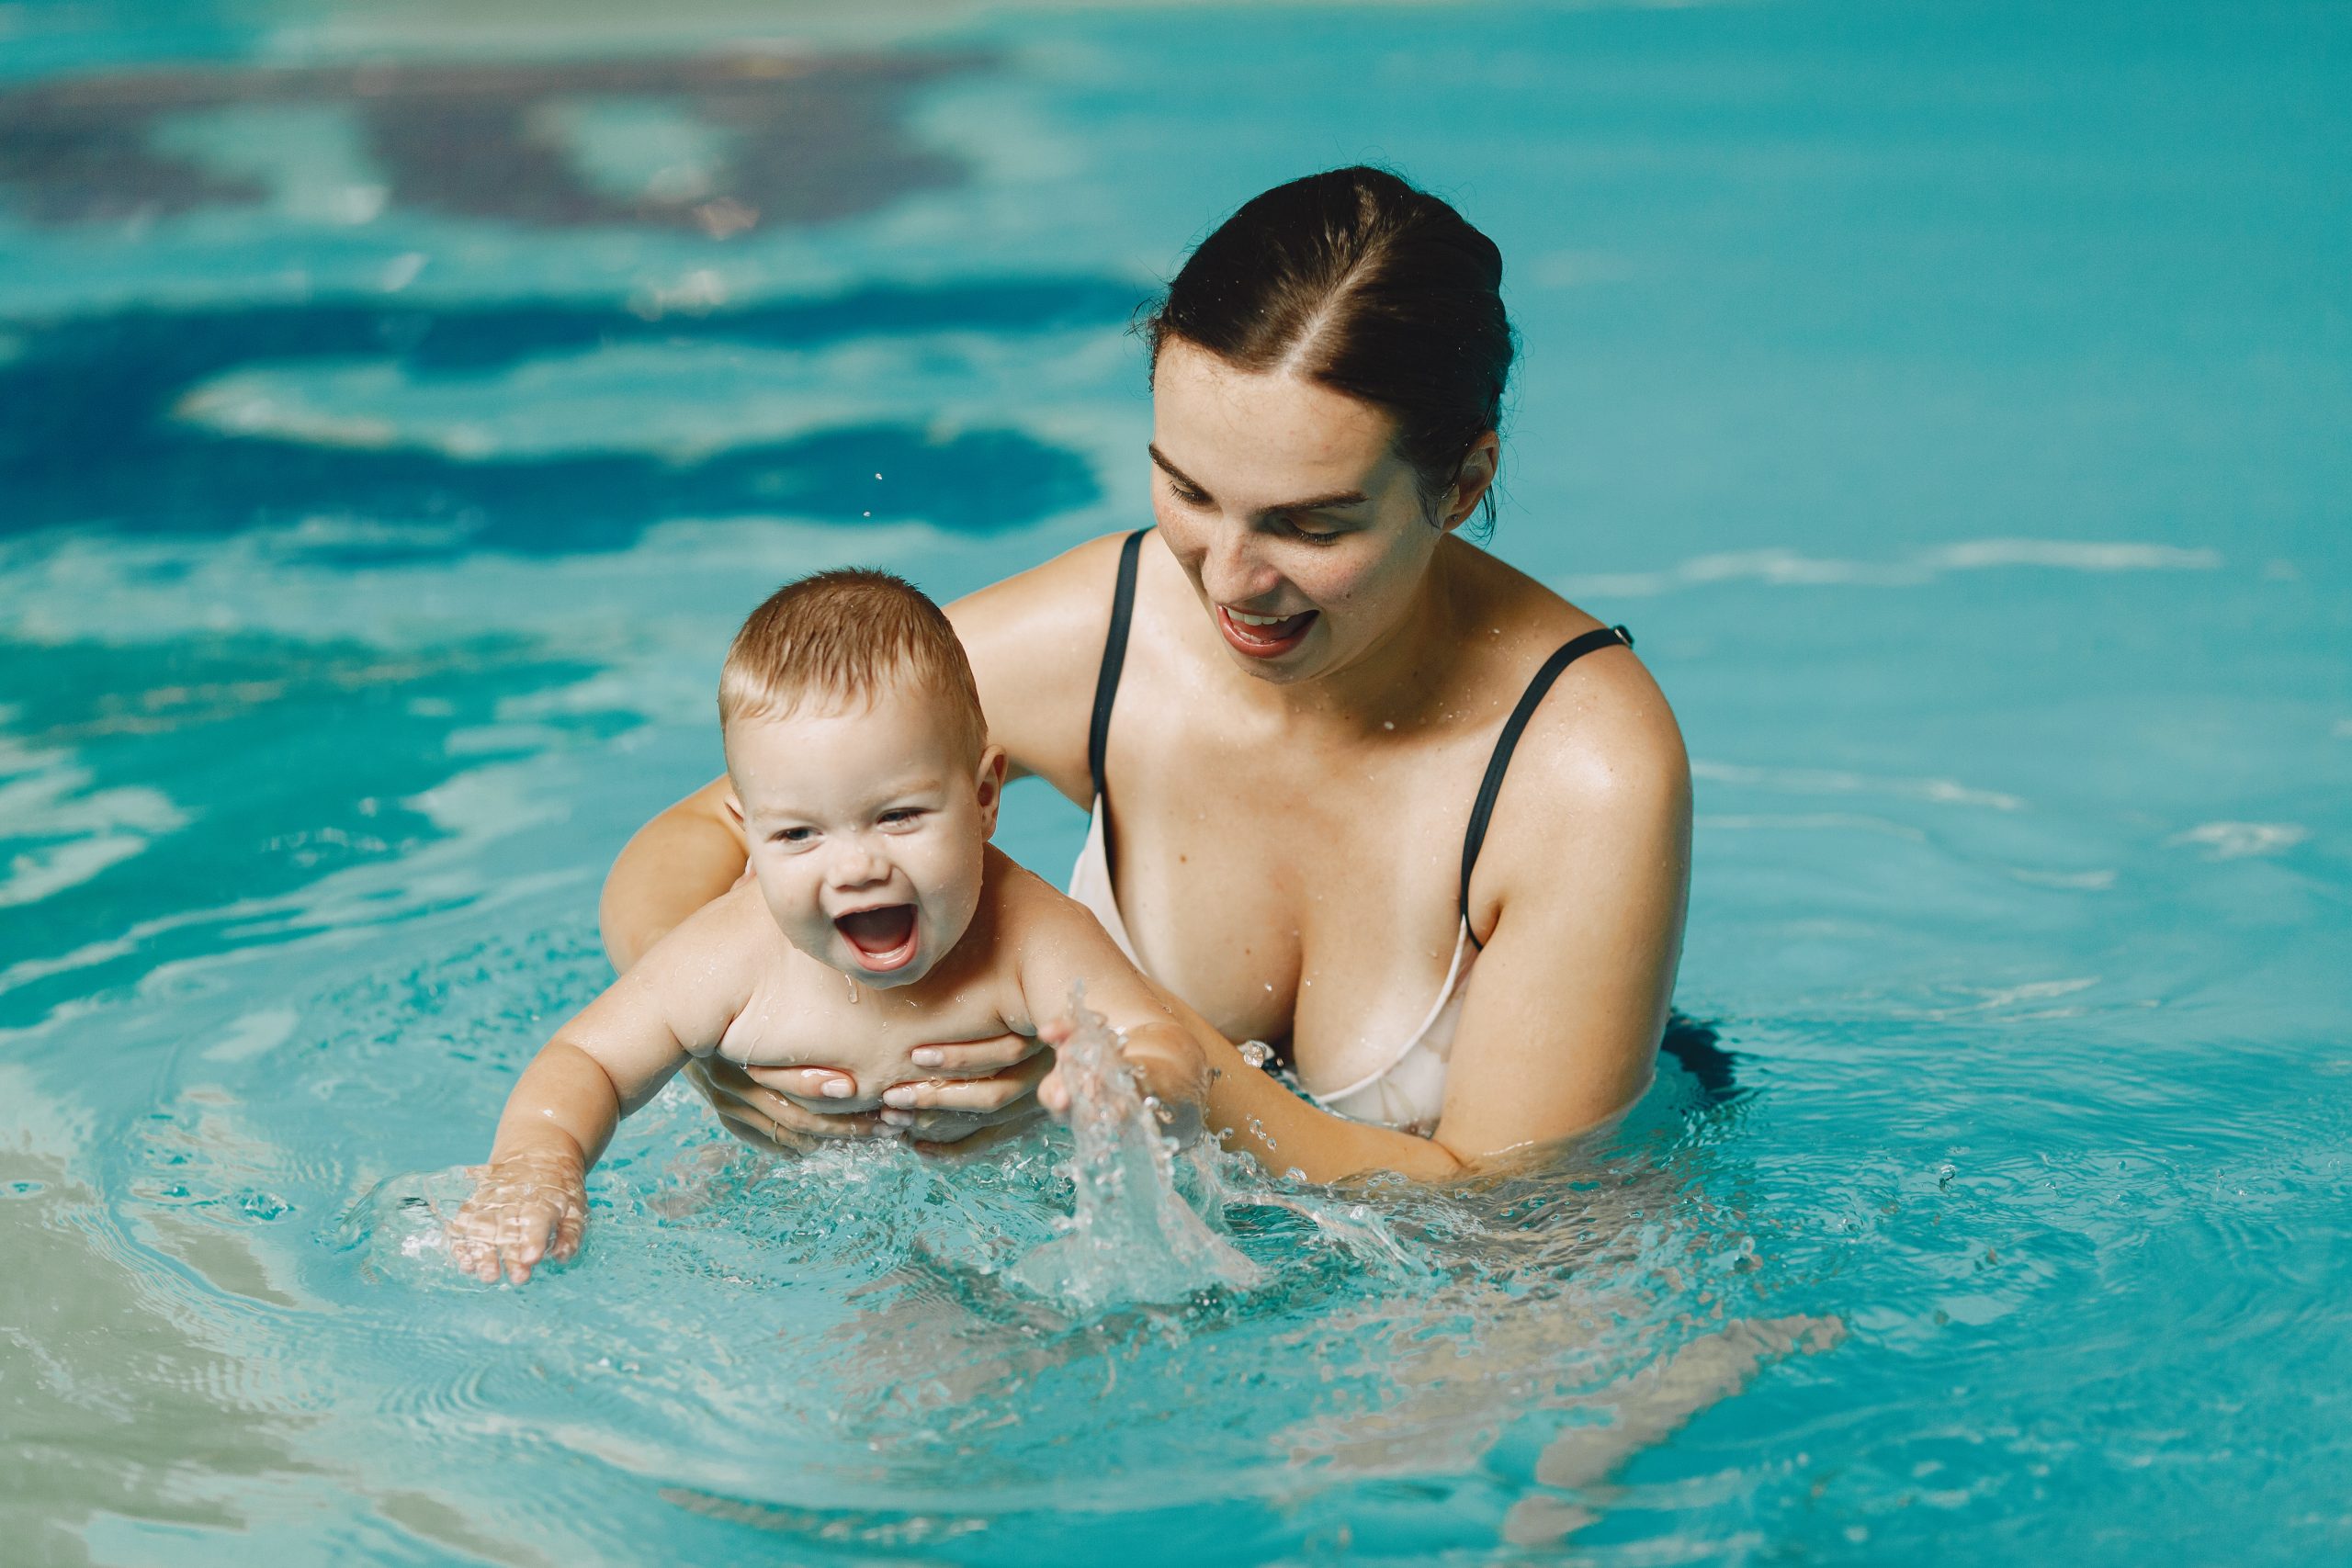 Mulher segura bebê em piscina enquanto ele bate as mãos na água